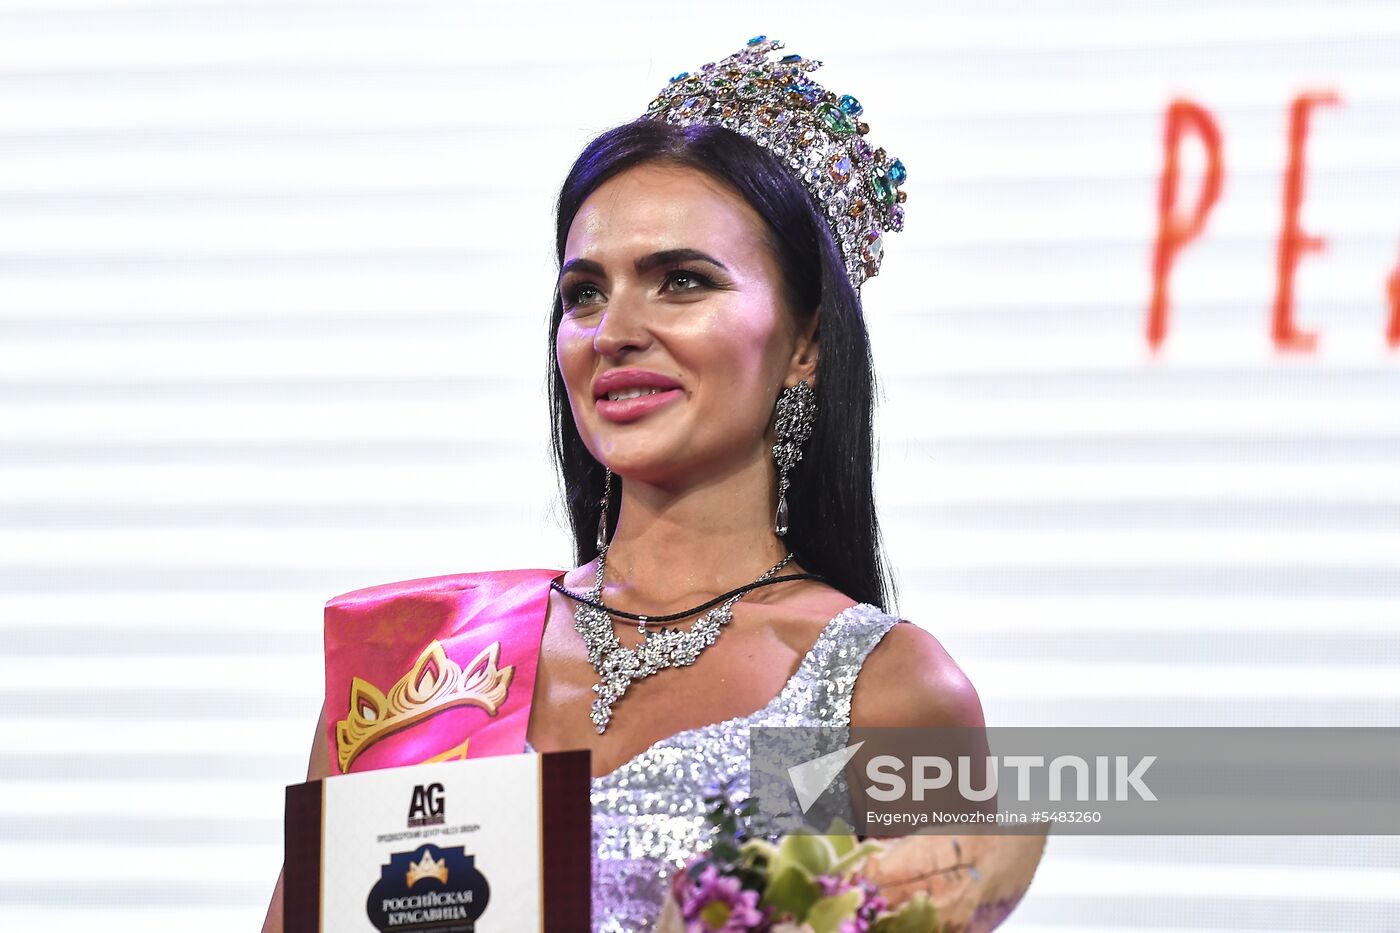 2018 Russian Beauty pageant final